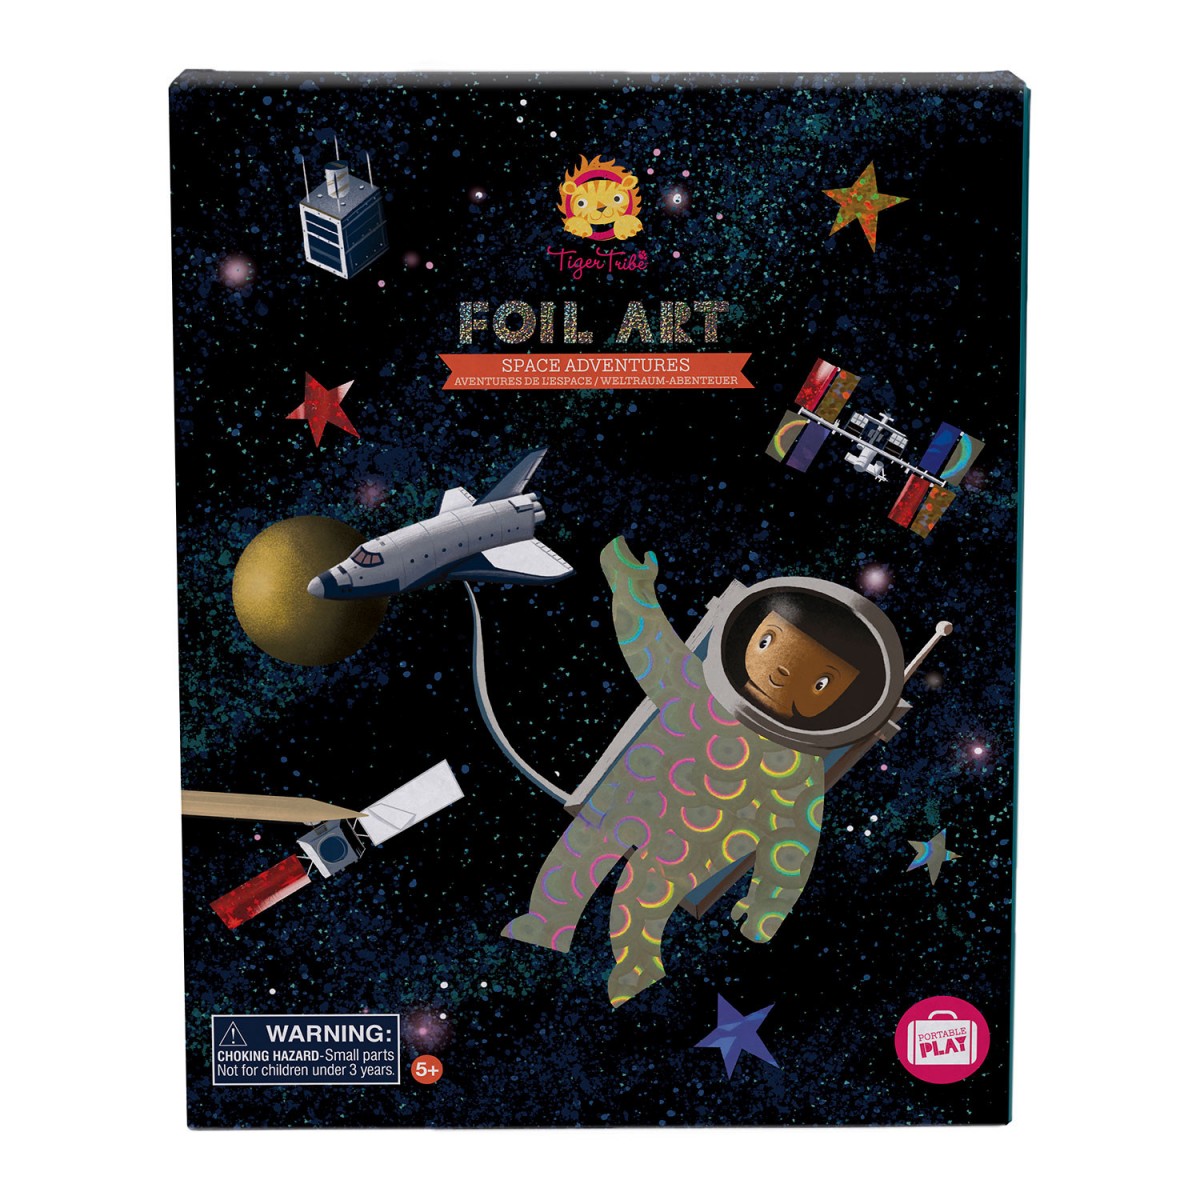 Espacio Libro De Colorear Para Niños: Increíble espacio exterior para  colorear con planetas, astronautas, cohetes, naves espaciales, estrellas y